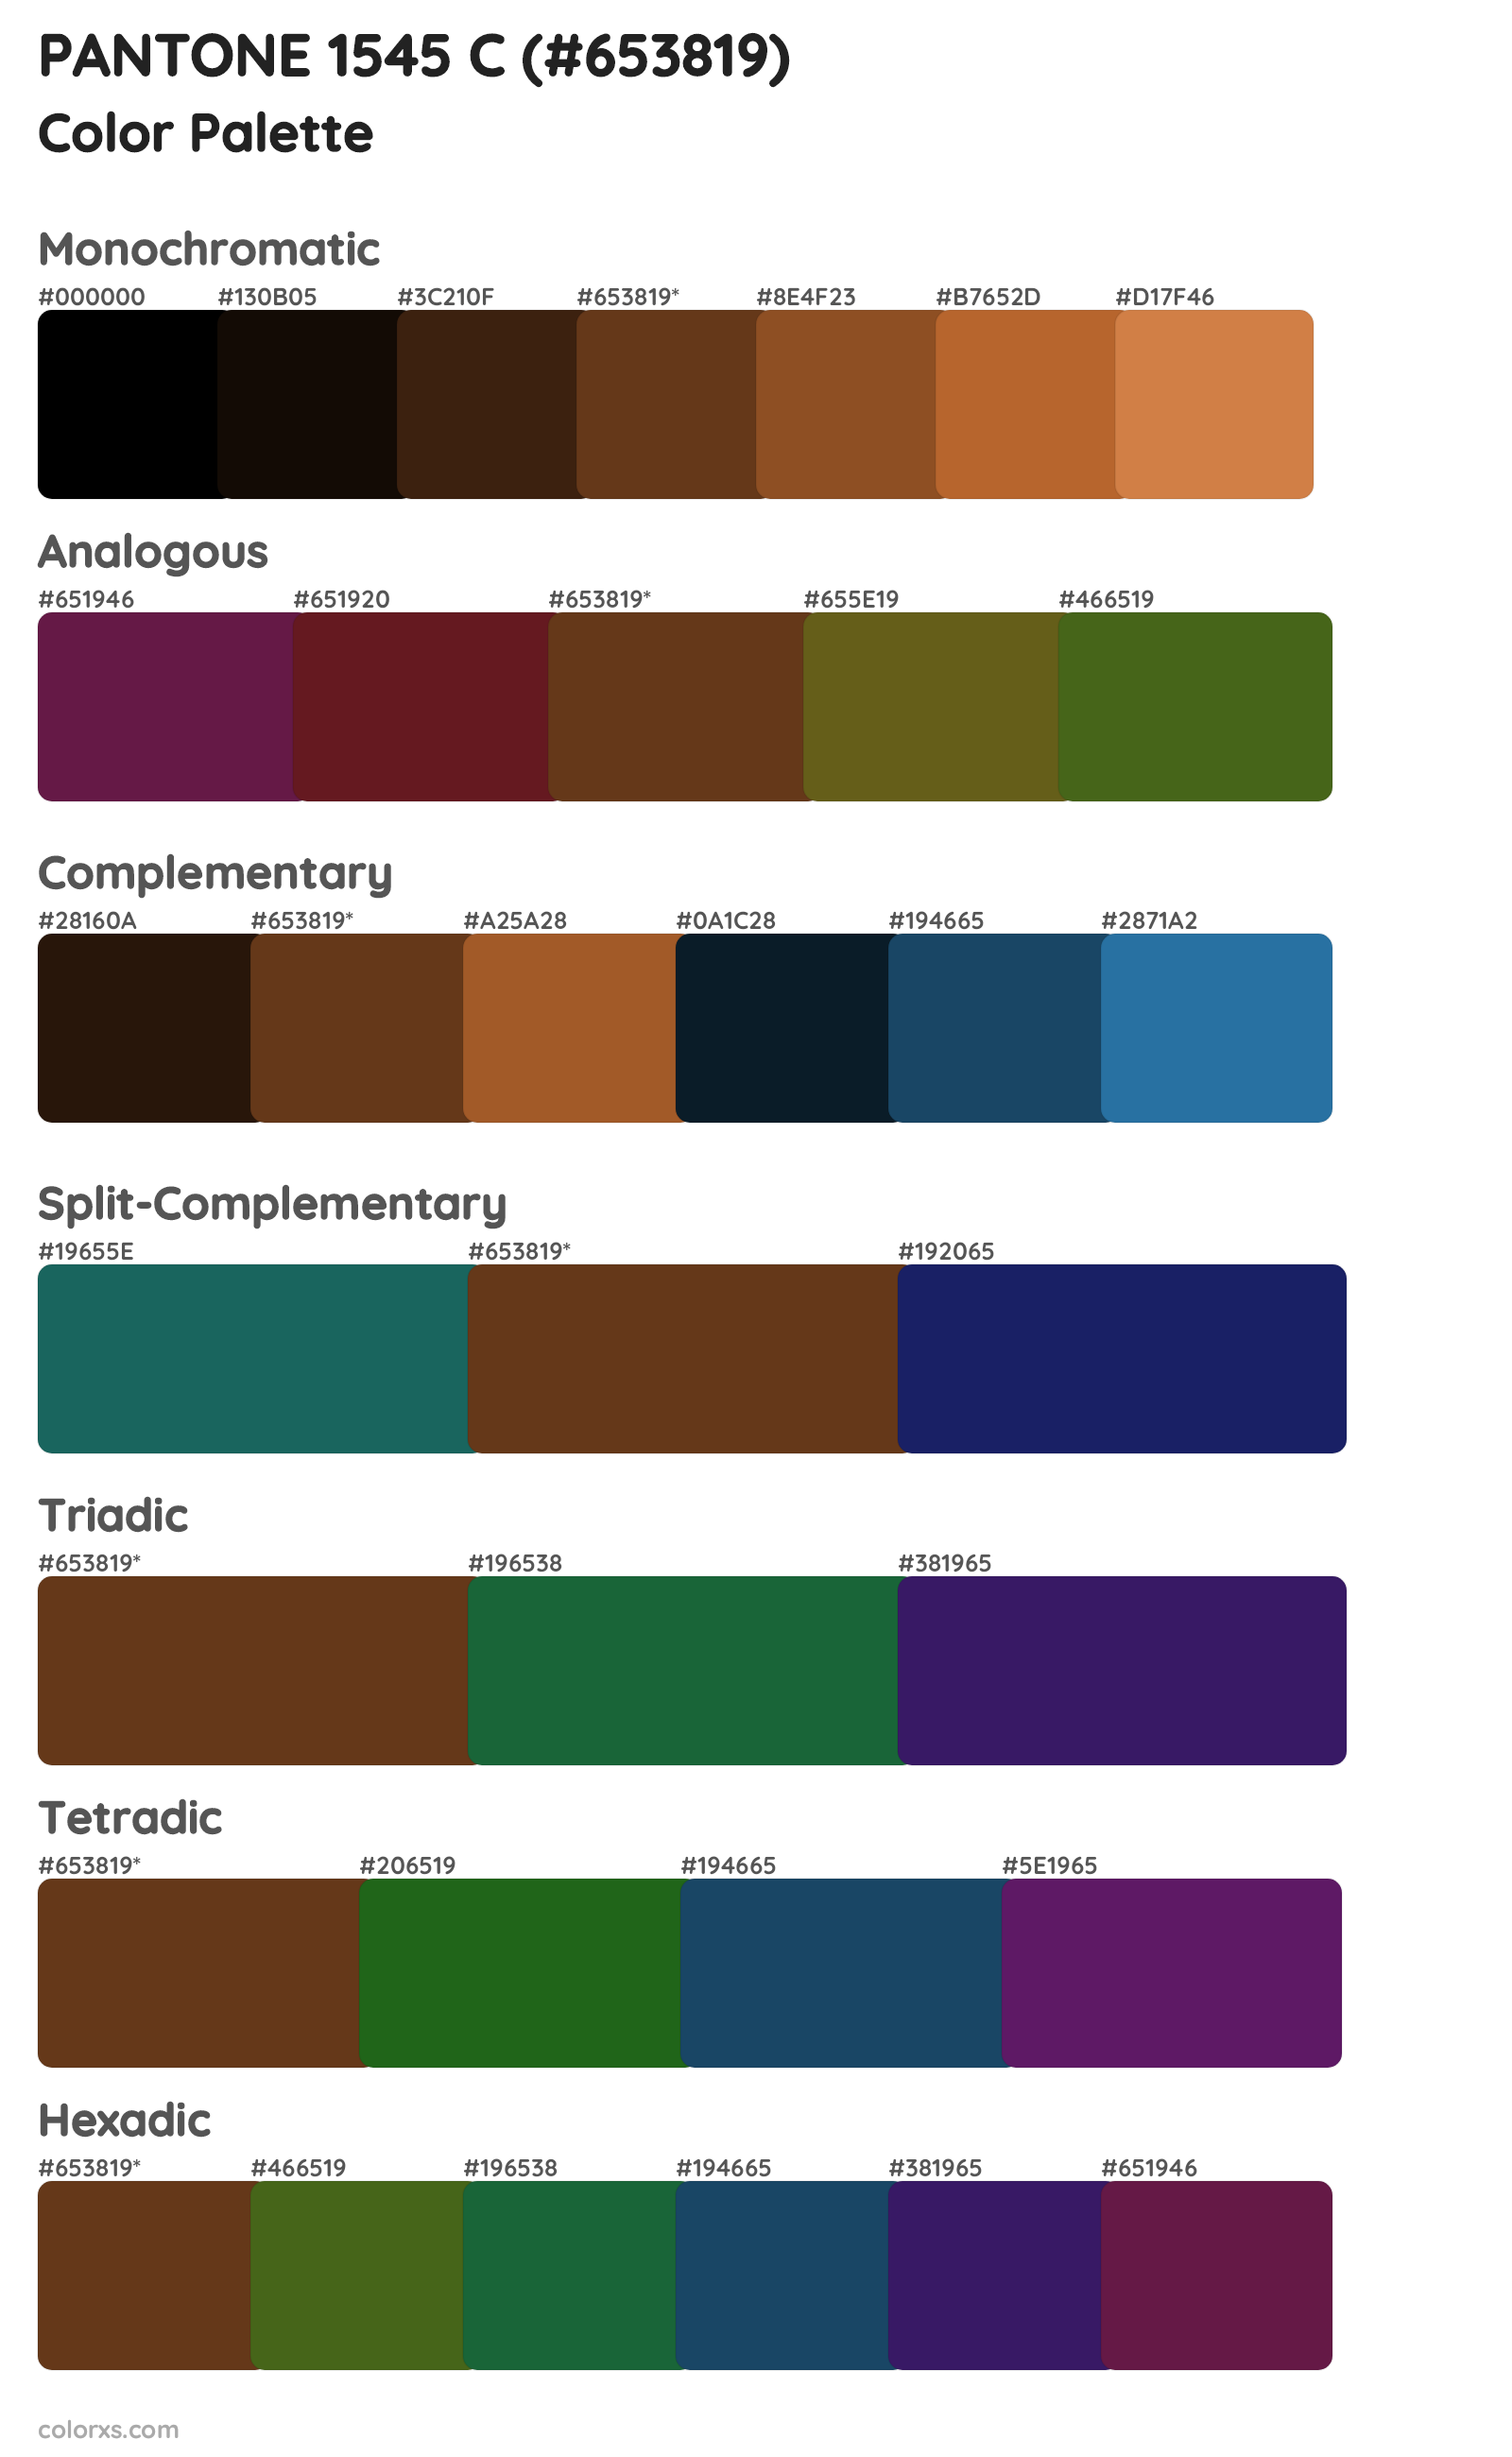 PANTONE 1545 C Color Scheme Palettes